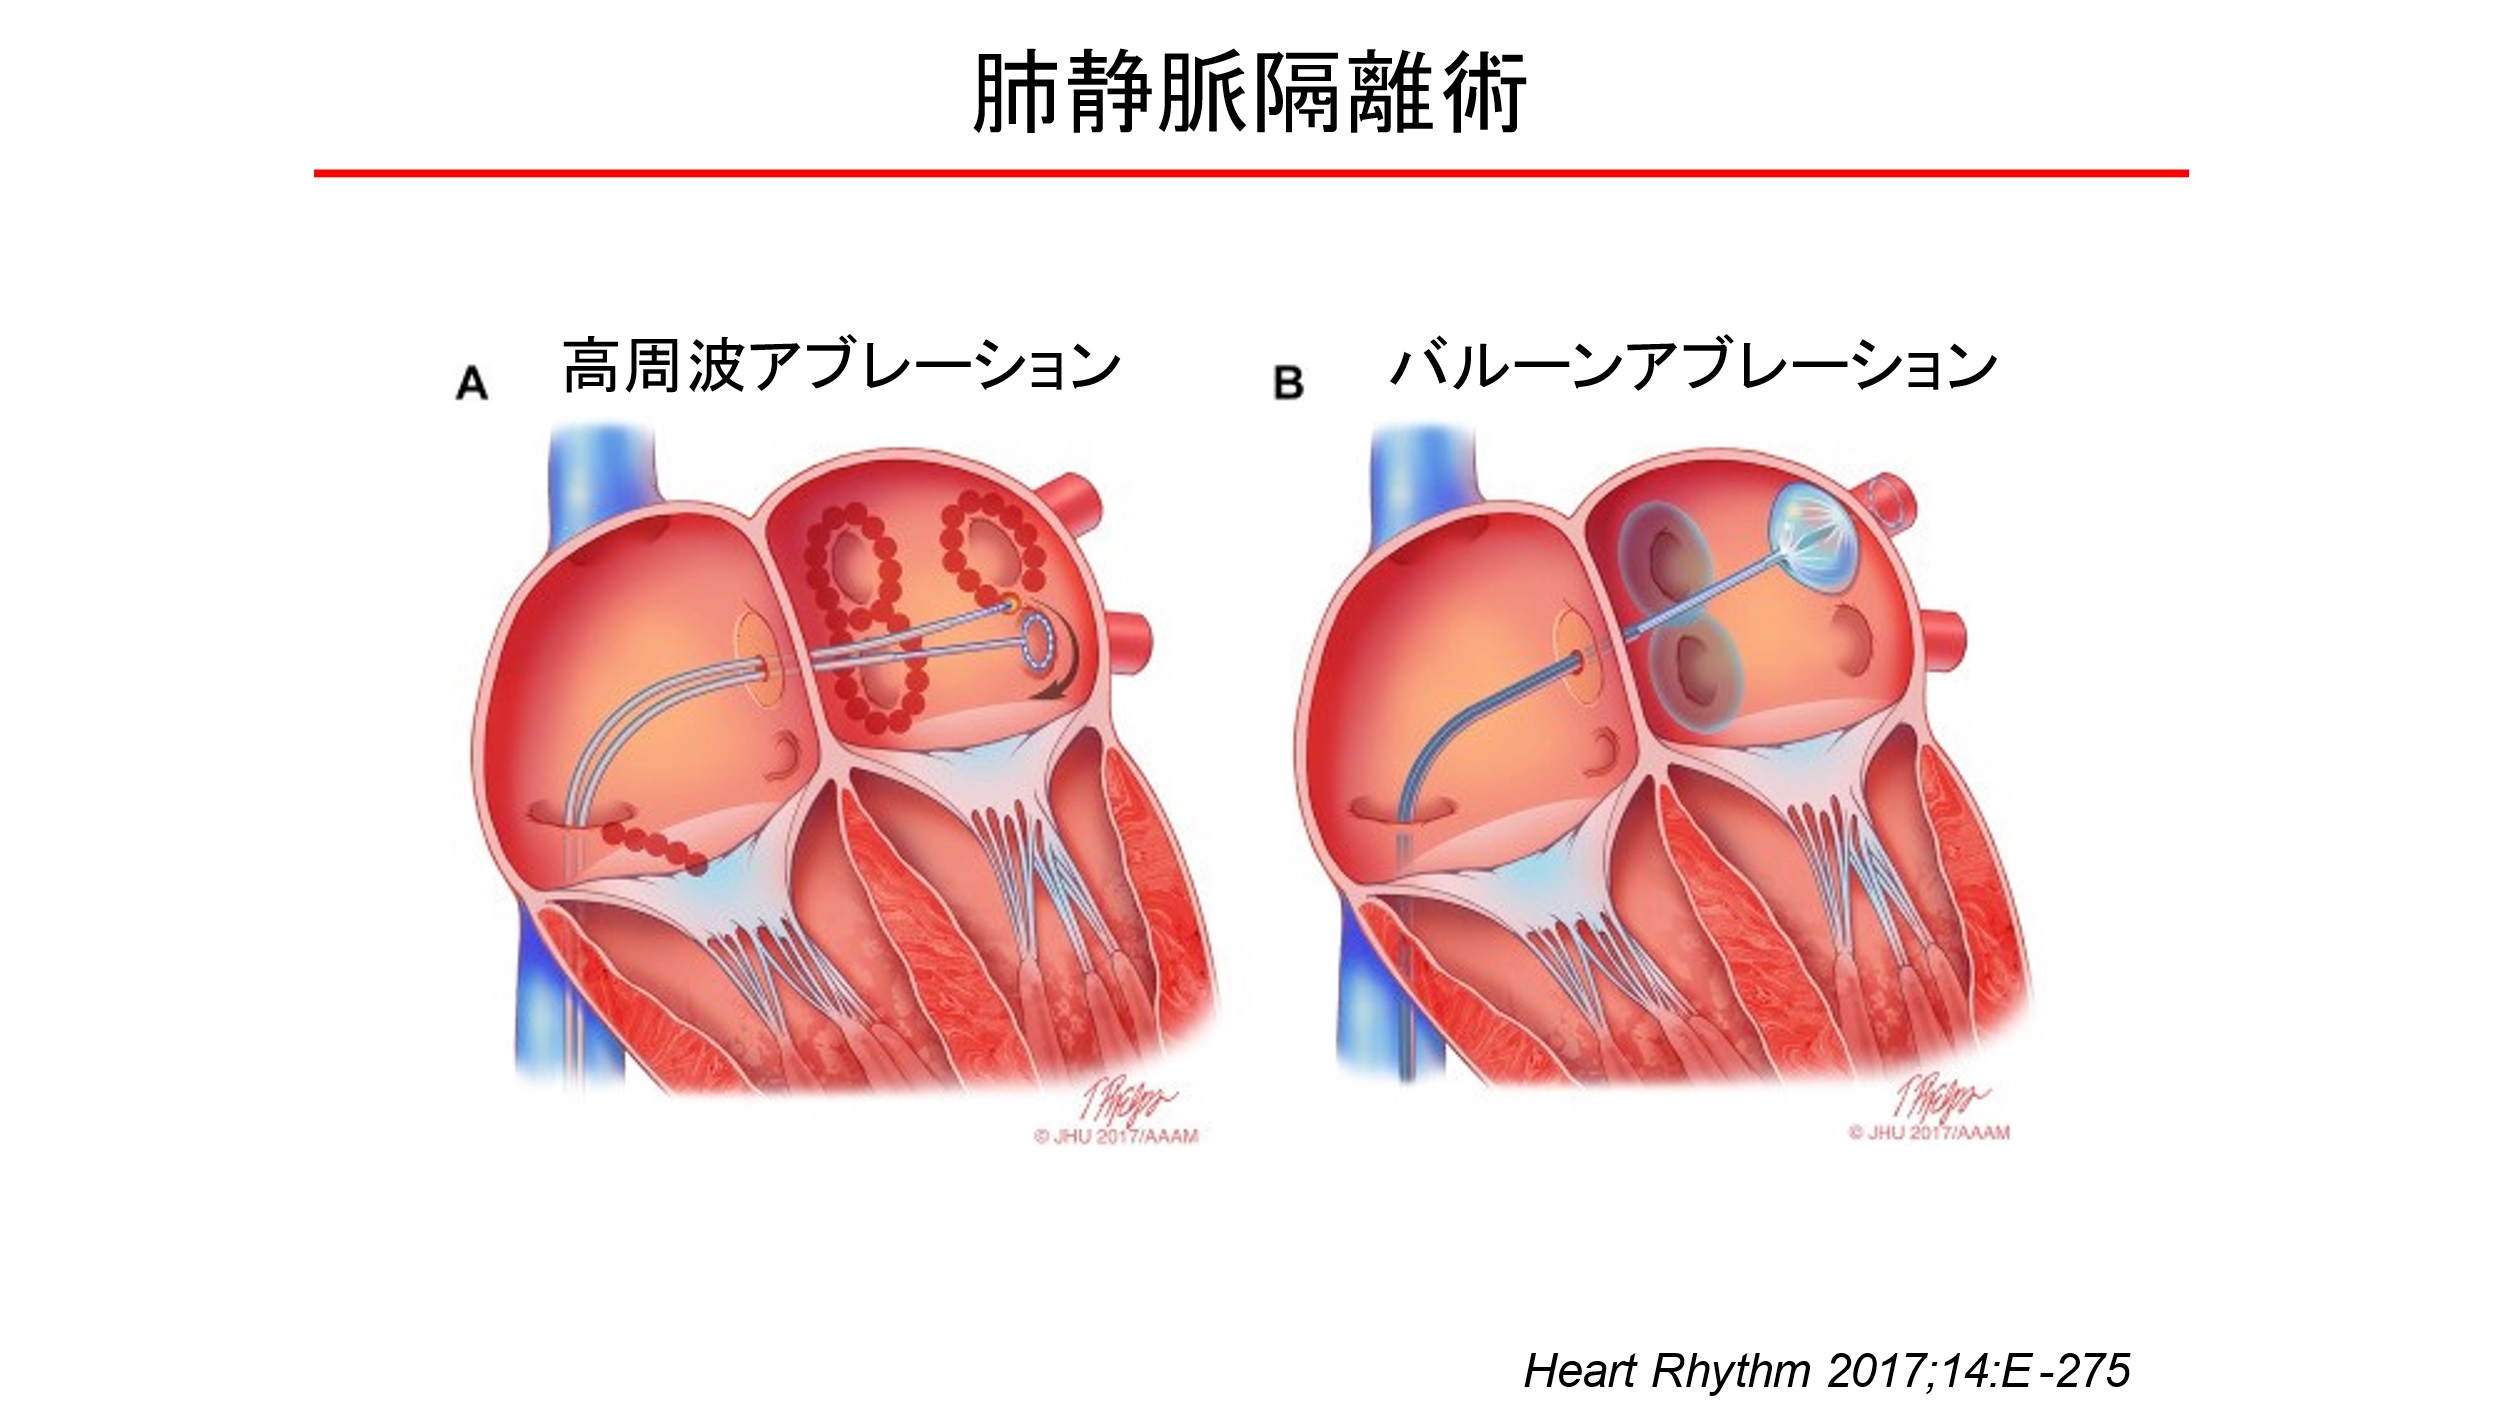 肺静脈で起きた異常な電気信号が左心房に入らないように肺静脈の開口部周辺の4本の肺静脈を円周状に焼灼する（熊谷浩一郎医師提供）